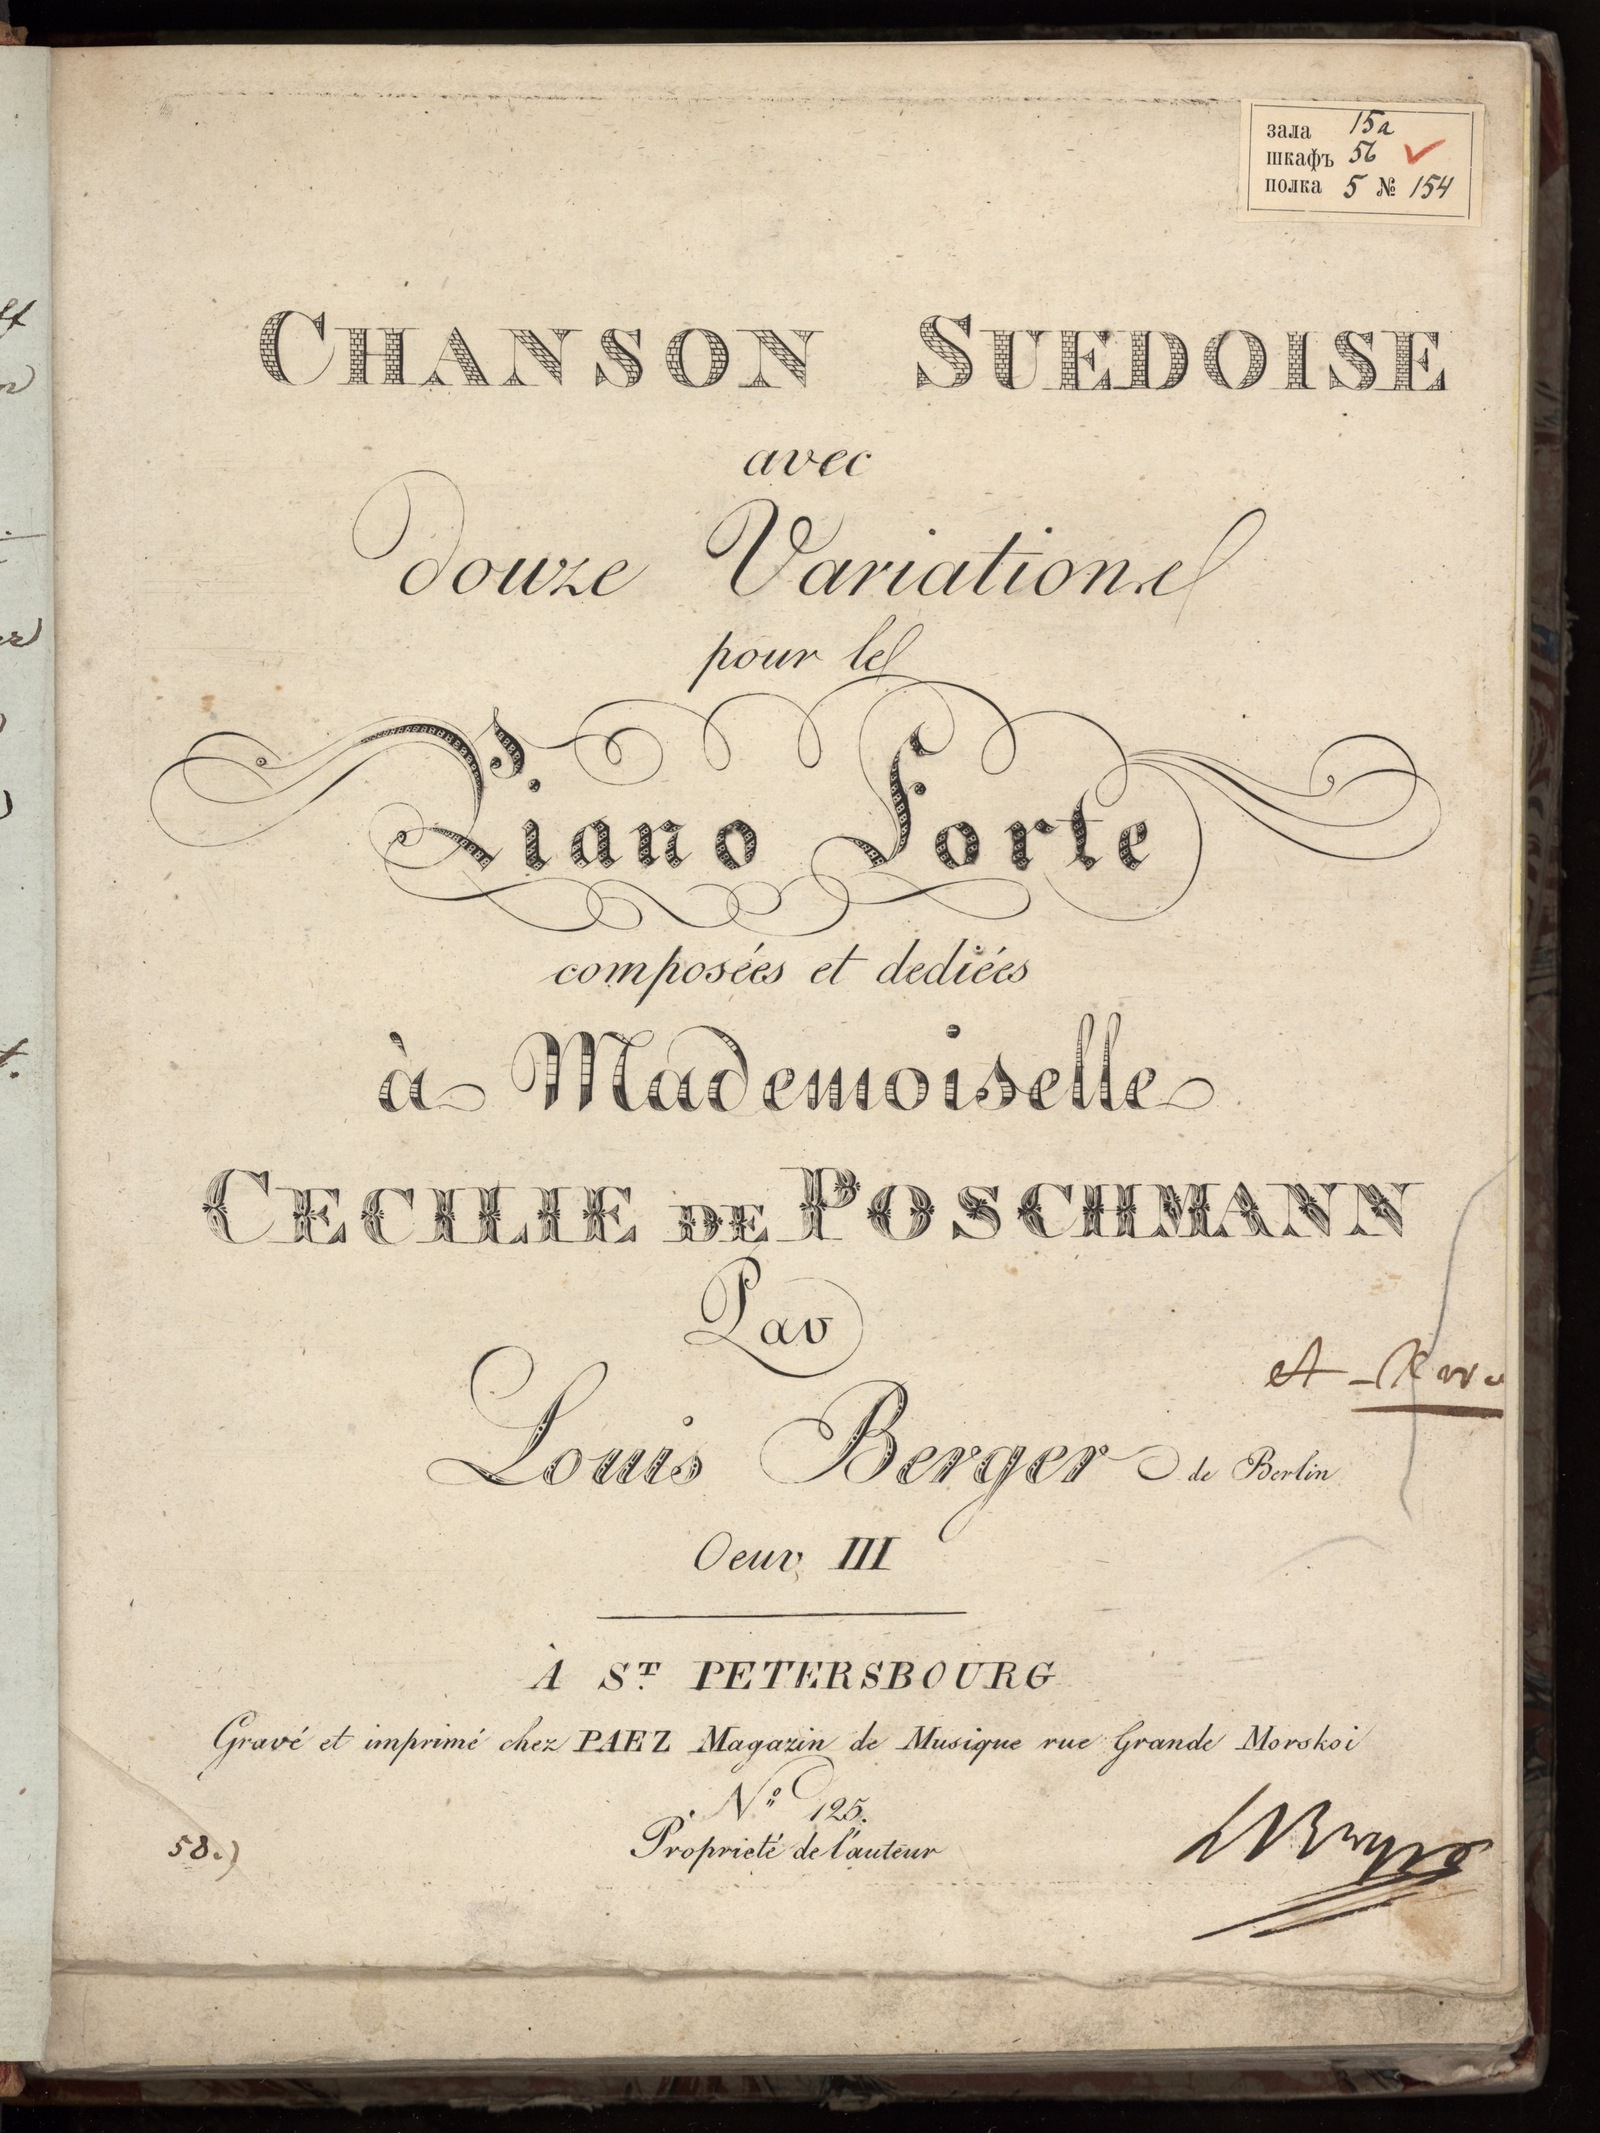 Изображение Chanson suedoise avec douze variations pour le piano forte